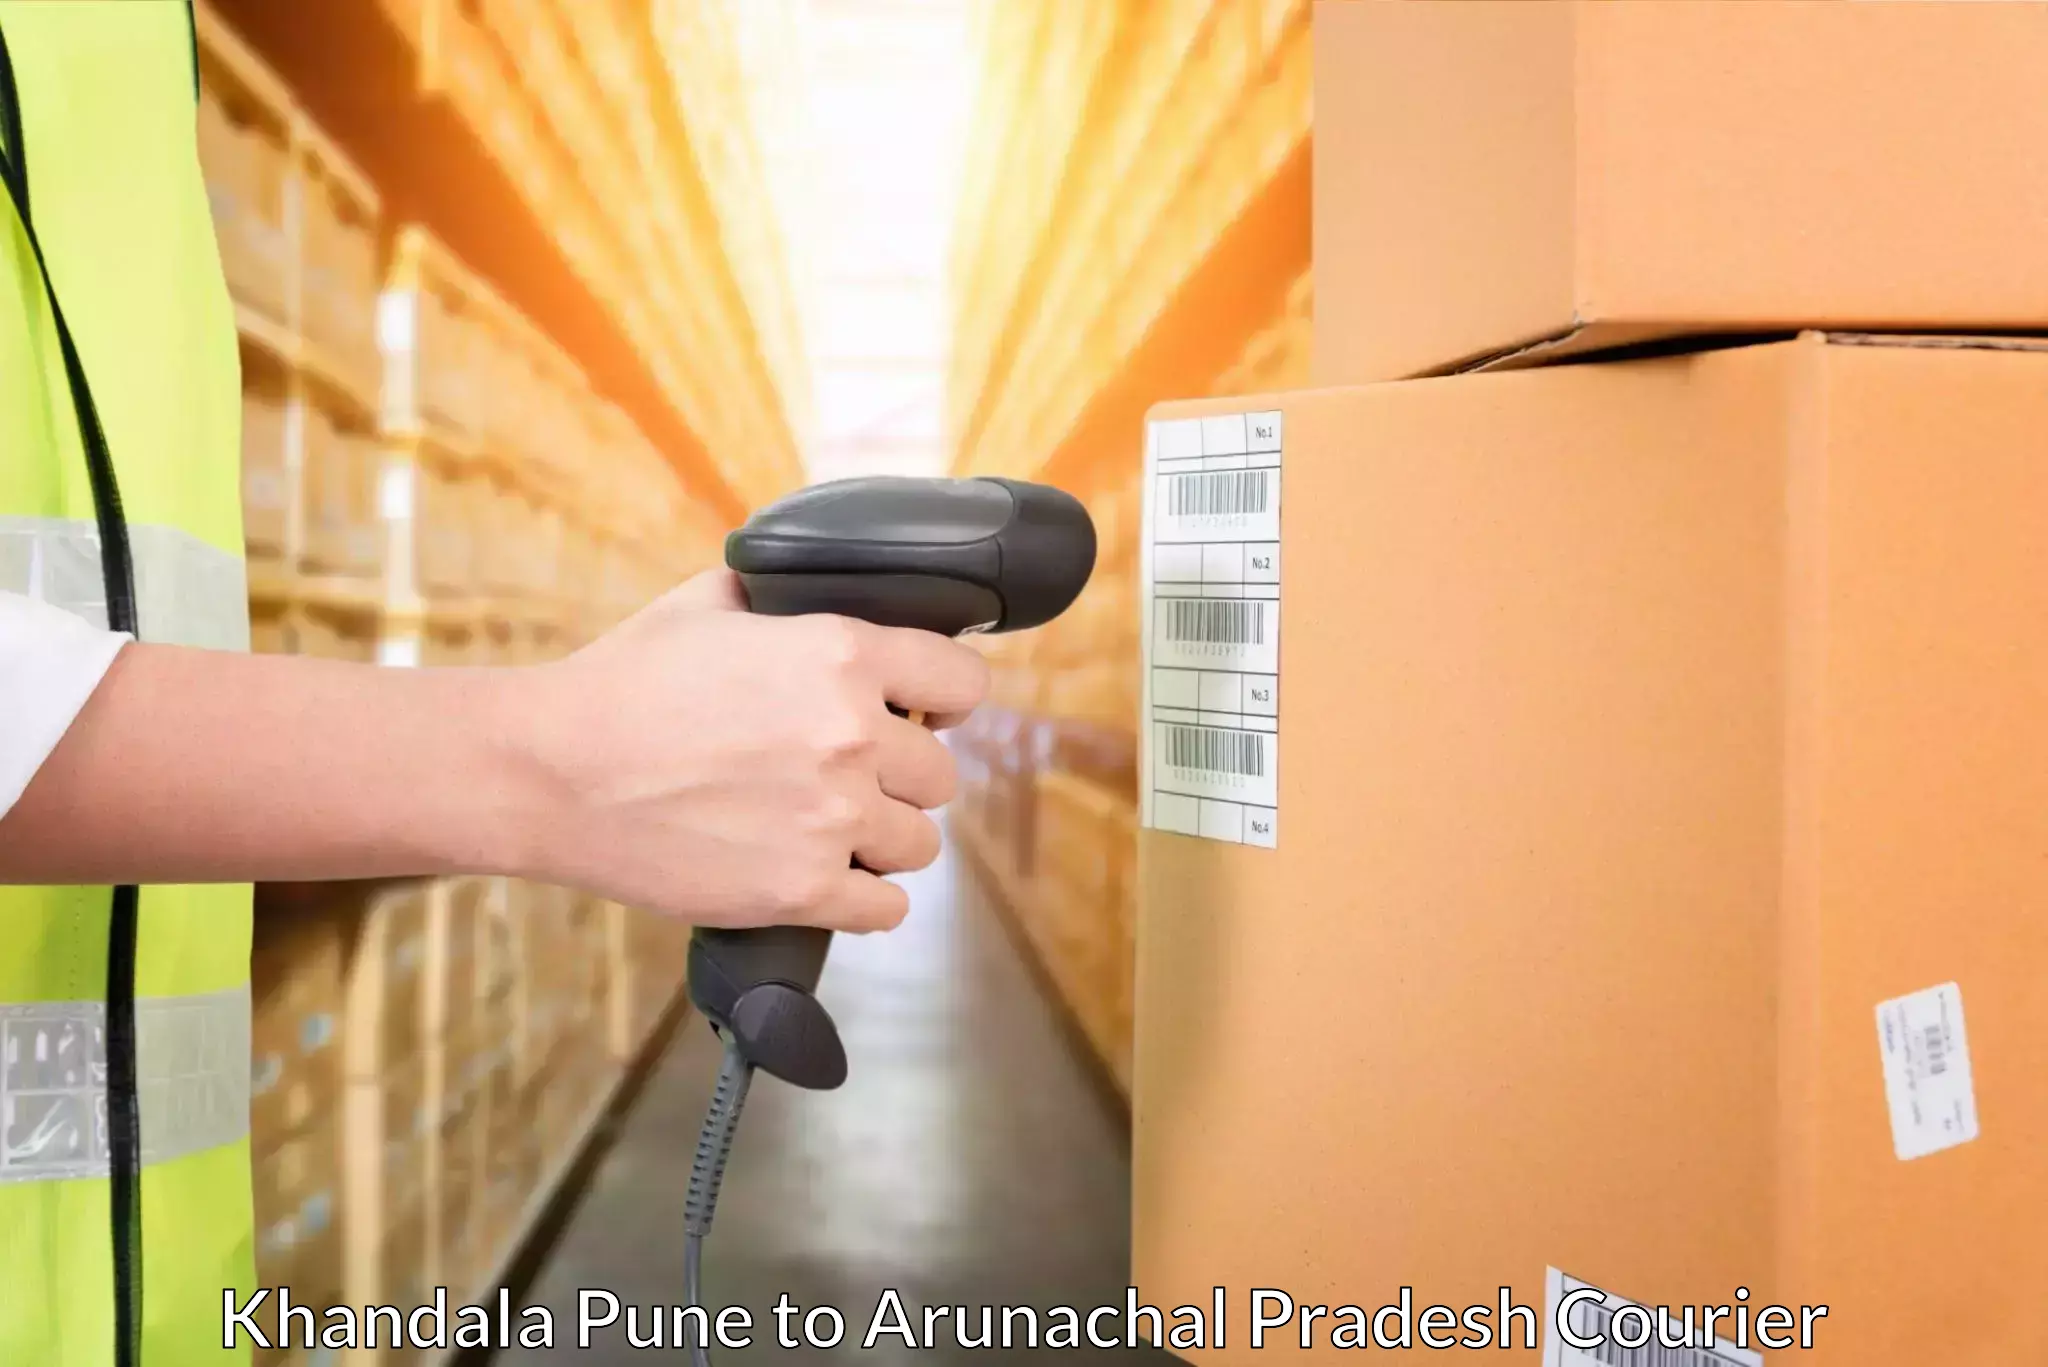 Customizable shipping options Khandala Pune to Lower Subansiri